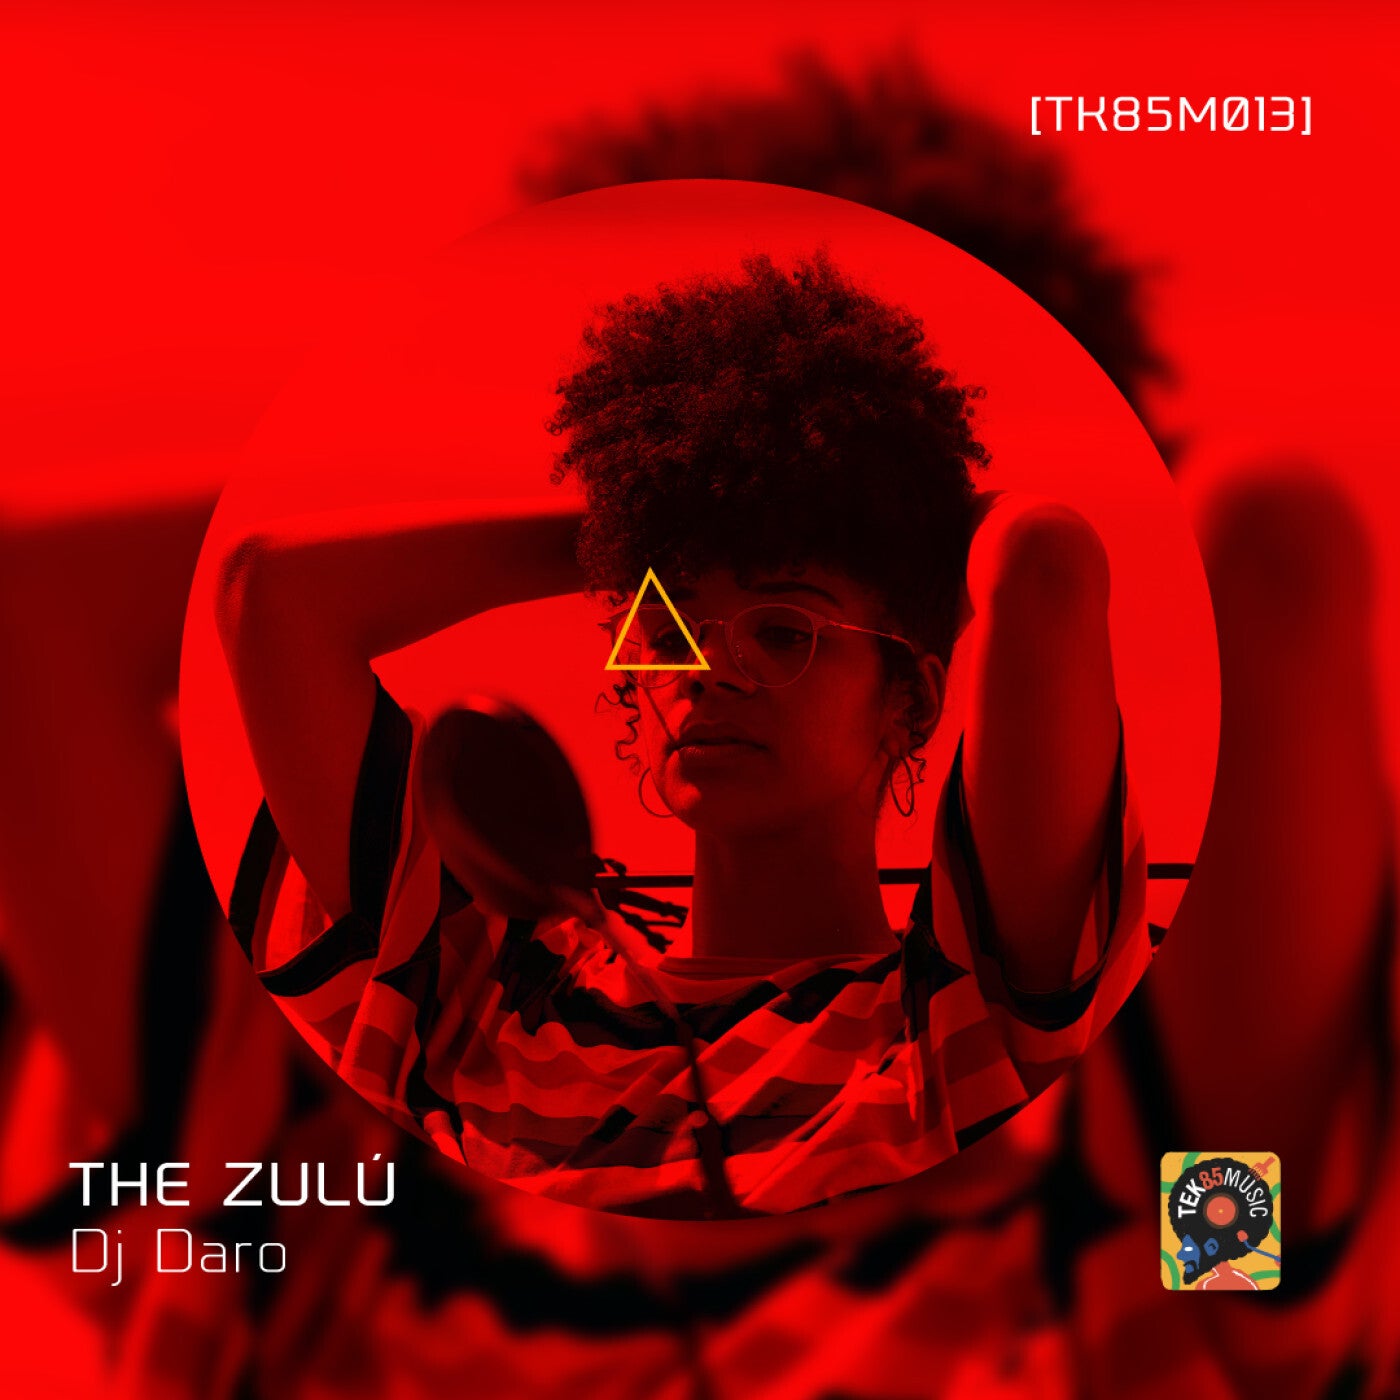 The Zulú